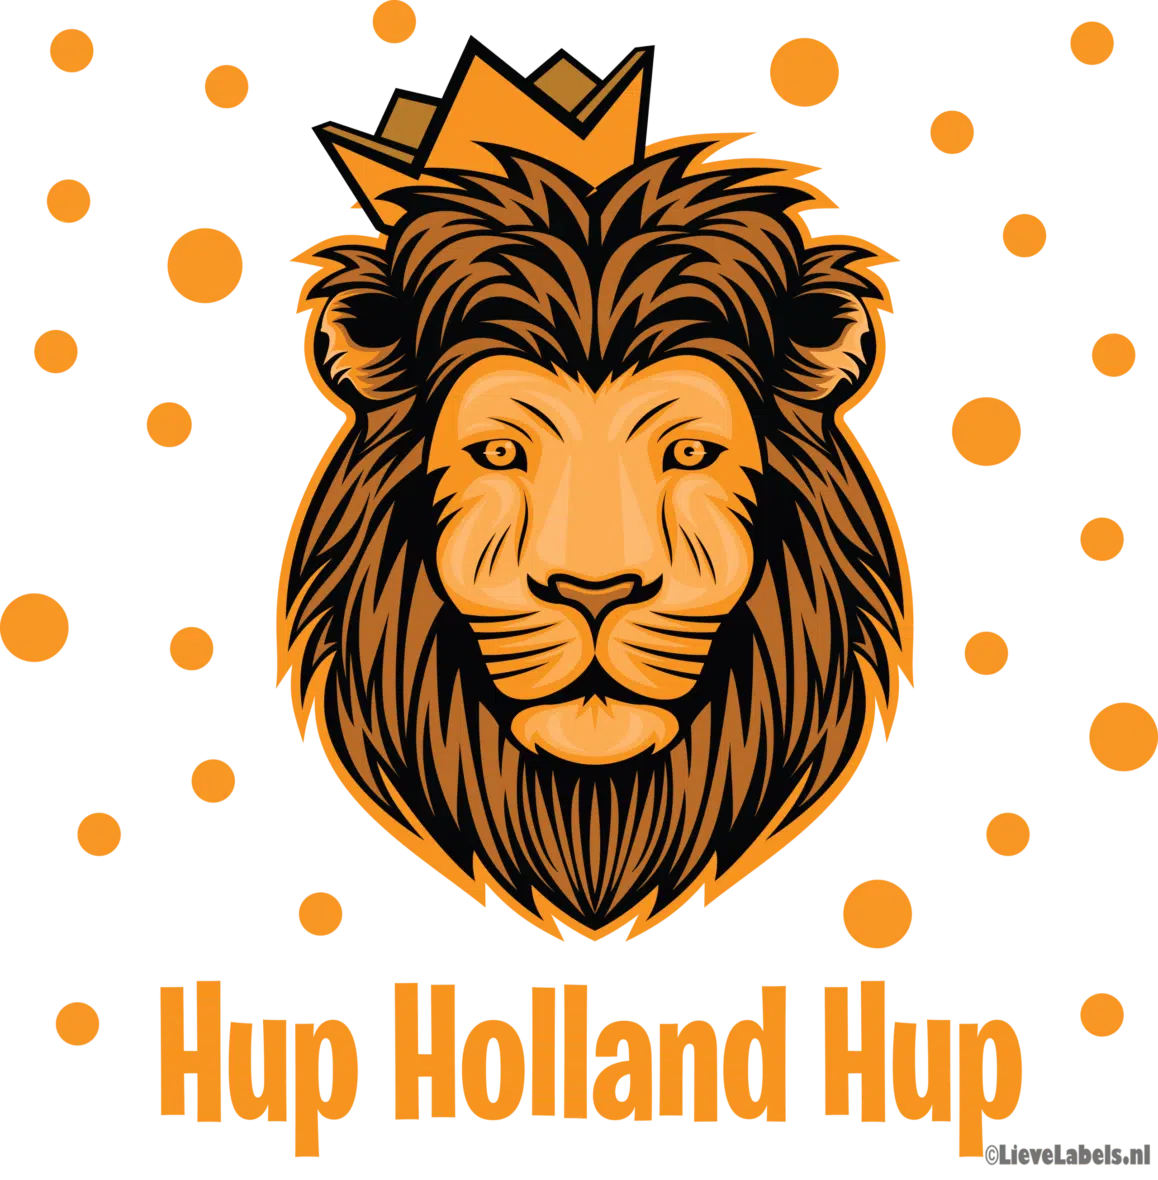 Herbruikbare statische raamstickers – Hup Holland